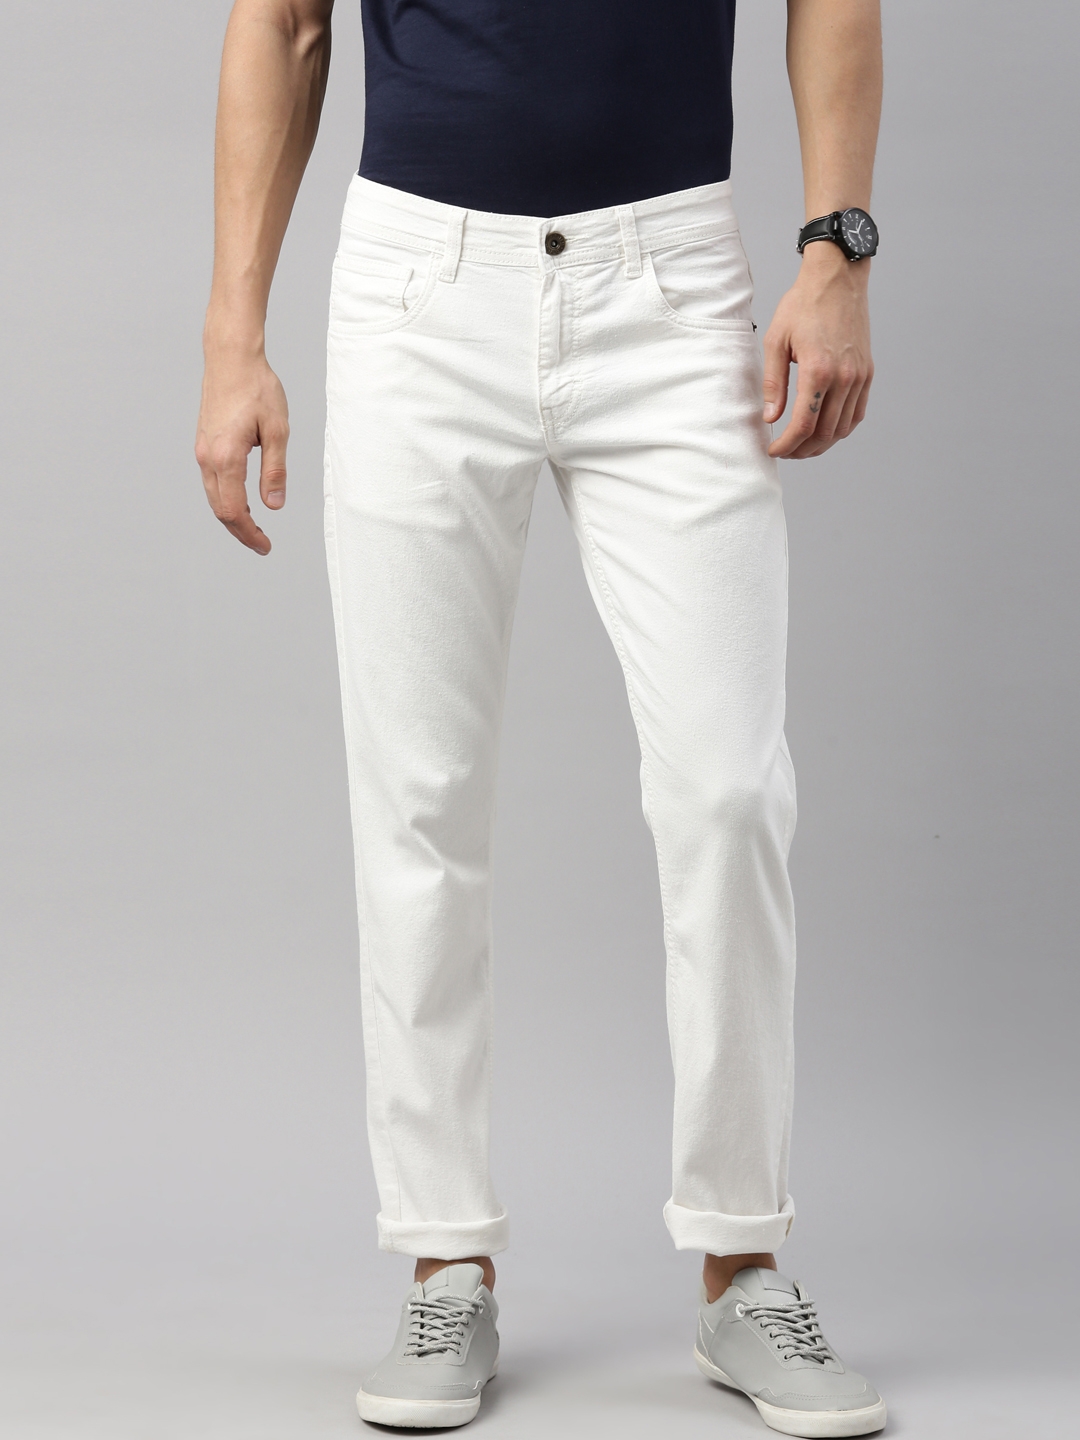 Chennis | Chennis Men White Slim Fit Jean